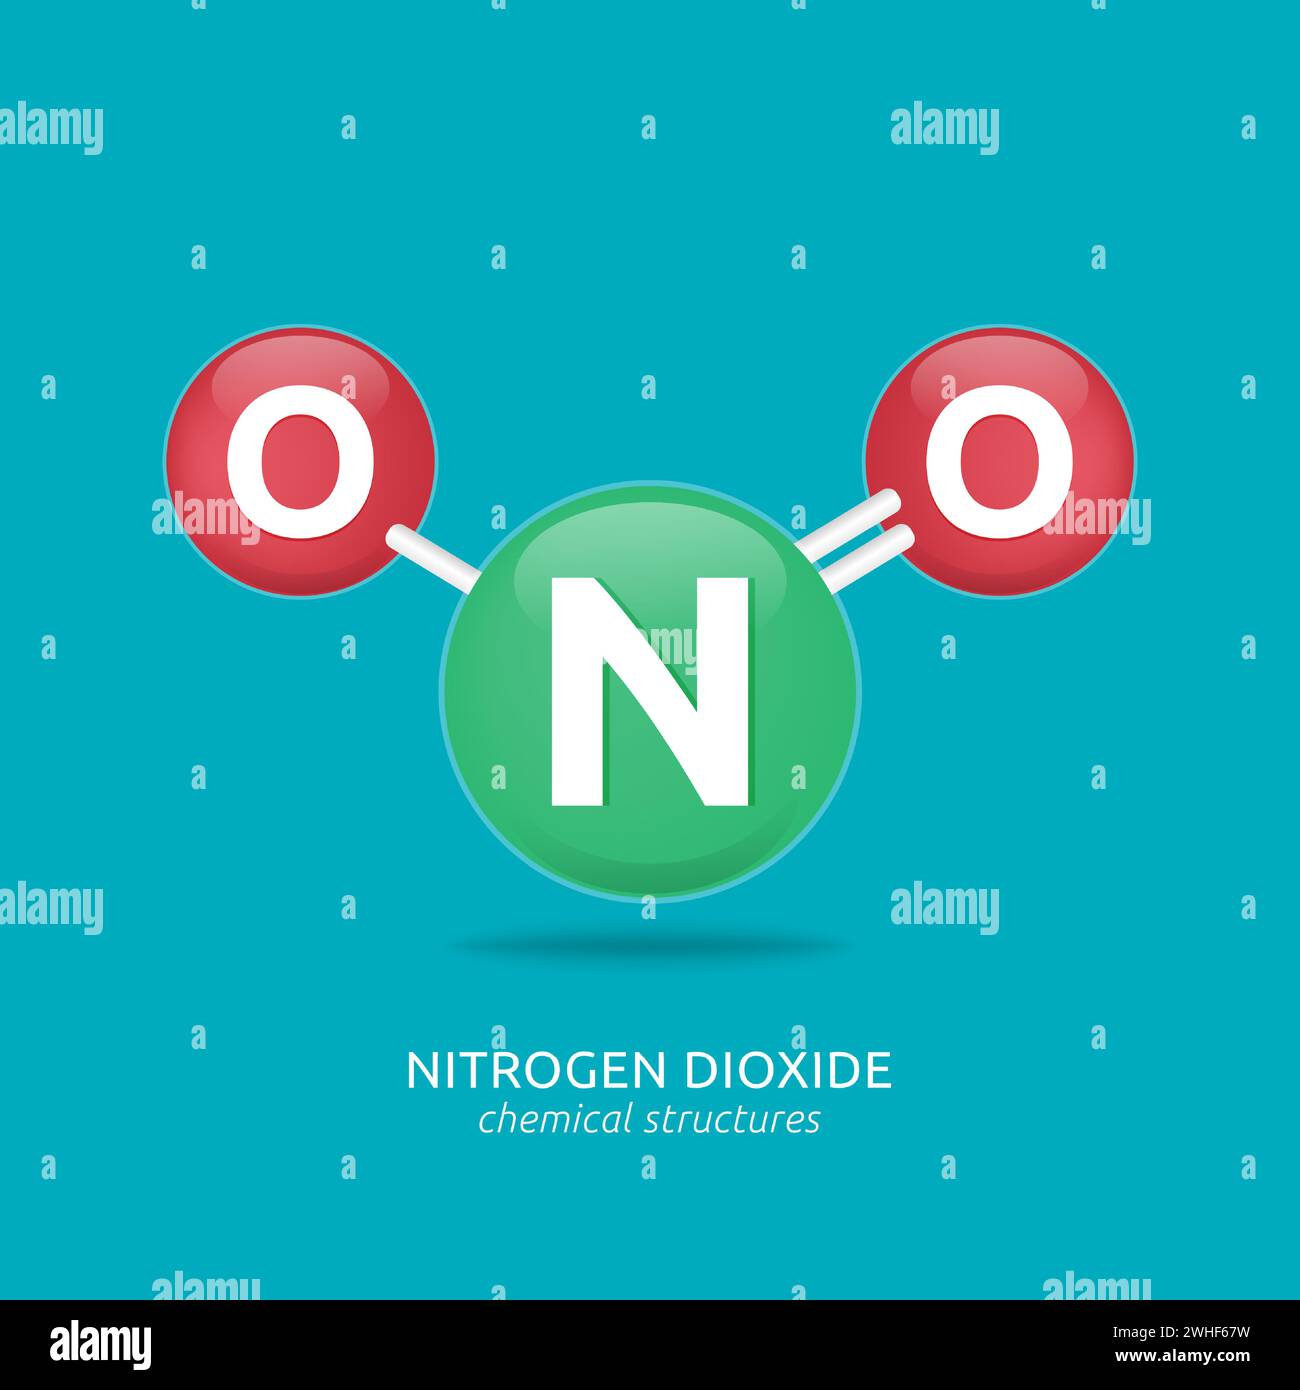 Nitrogen dioxide formula, chemical structures vector illustration Stock ...